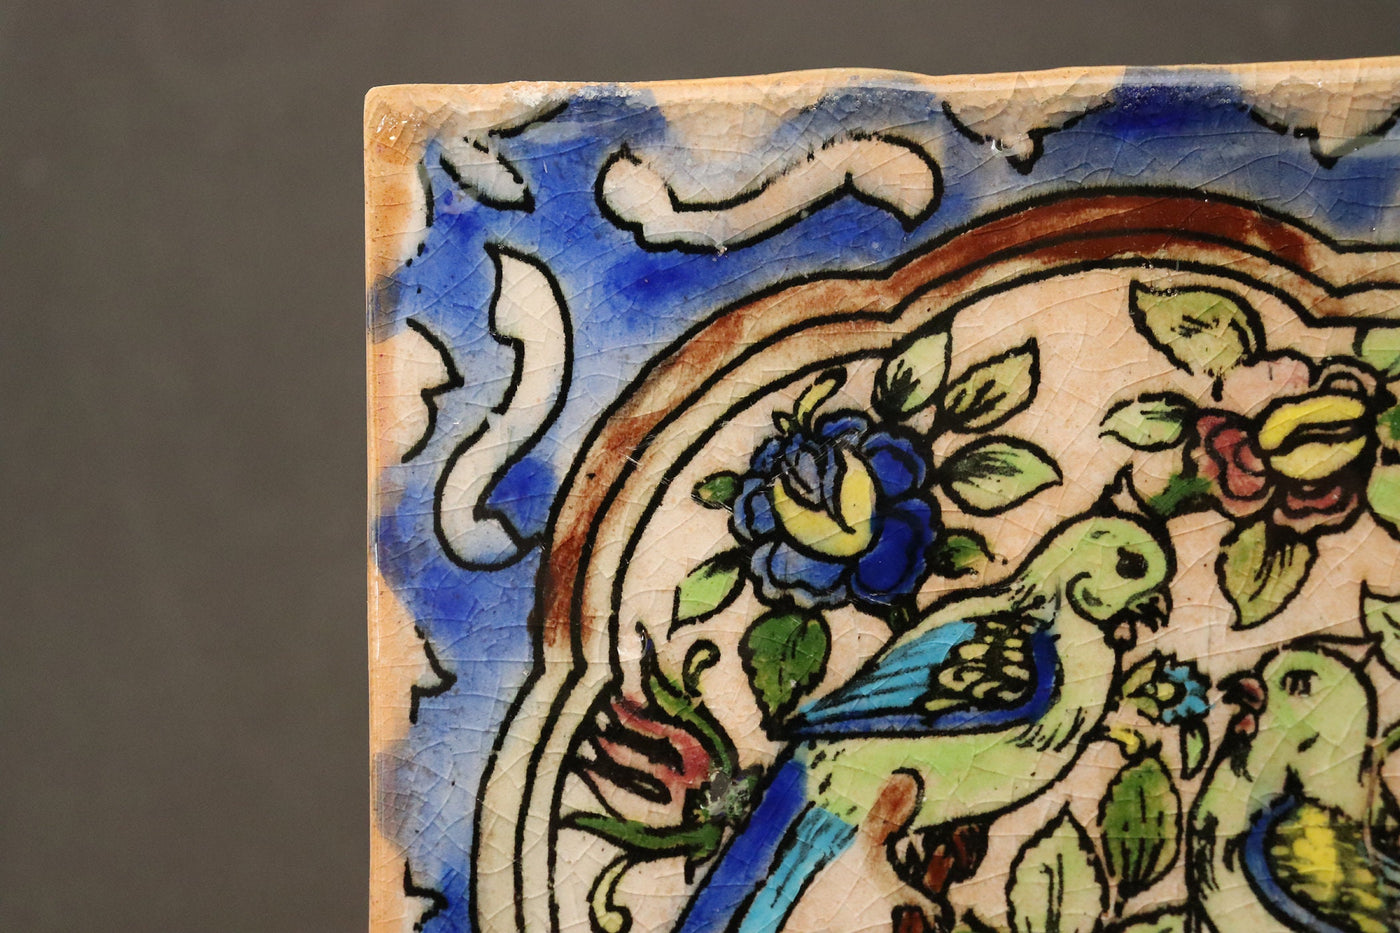 17x17 cm vintage handgefertigt islamische orient Glasierte Ton Fliesen Töpfer Fliesen Keramik Fliese kacheln Bodenfliesen Wandfliesen Nr:A Keramik Orientsbazar   